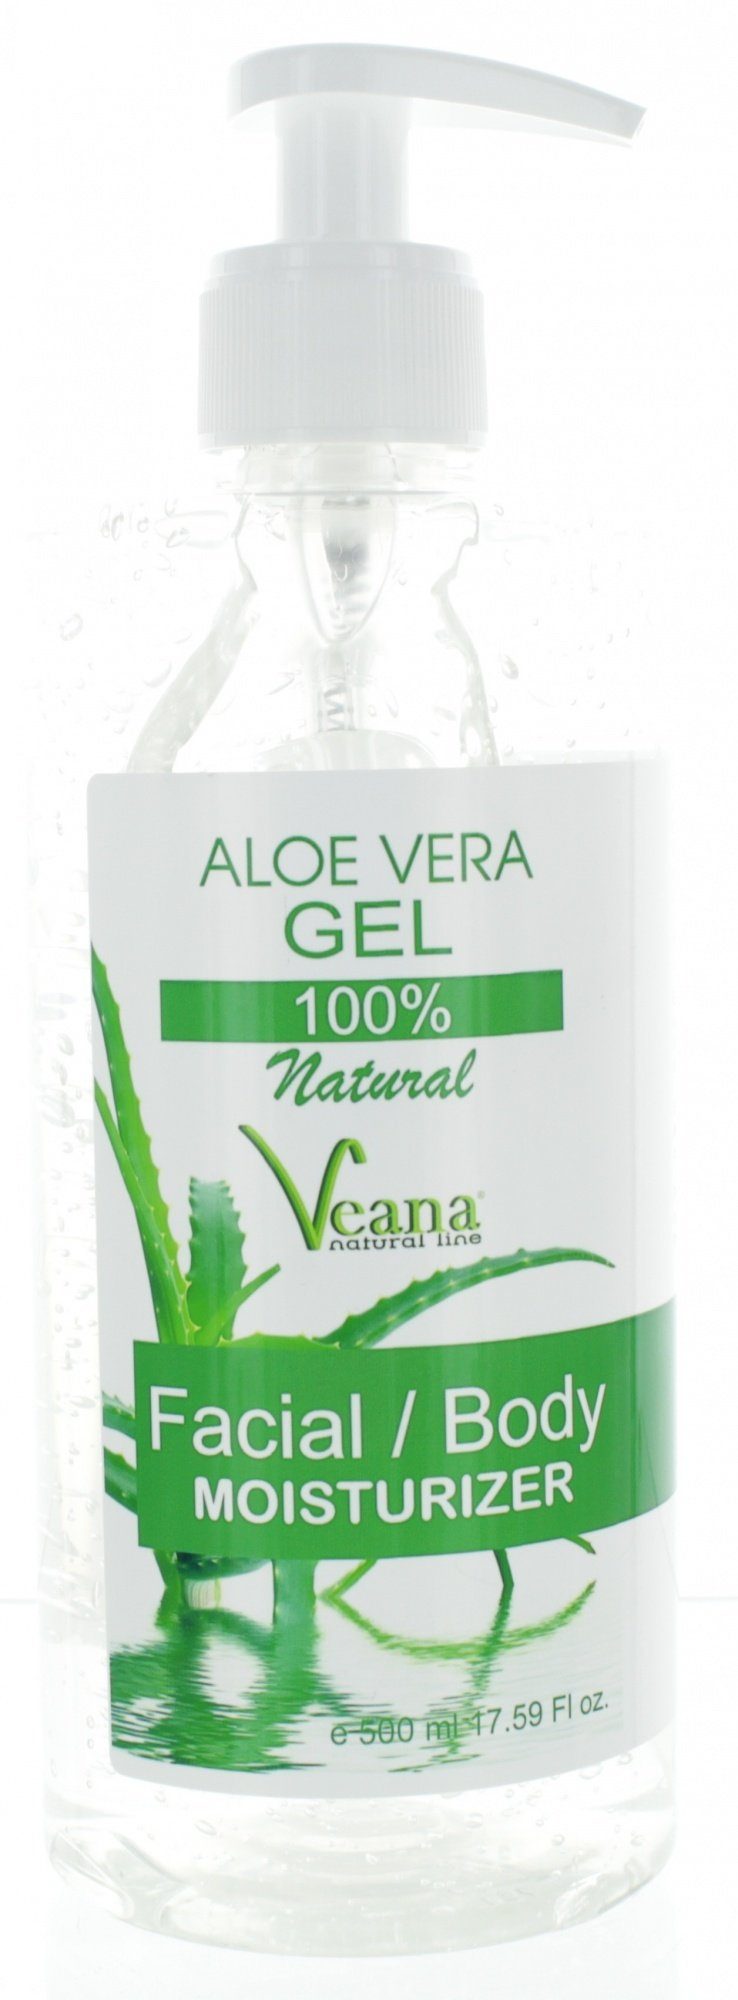 und Vera Gel in made bei Aloe Qualität Schuppenflechte - 100% wirksam - natural Rosacea, Sonnenbrand, PREMIUM Europe gegen Insektenstiche, und Akne, Entzündungen Veana Neurodermitis Körperpflegemittel (500ml)